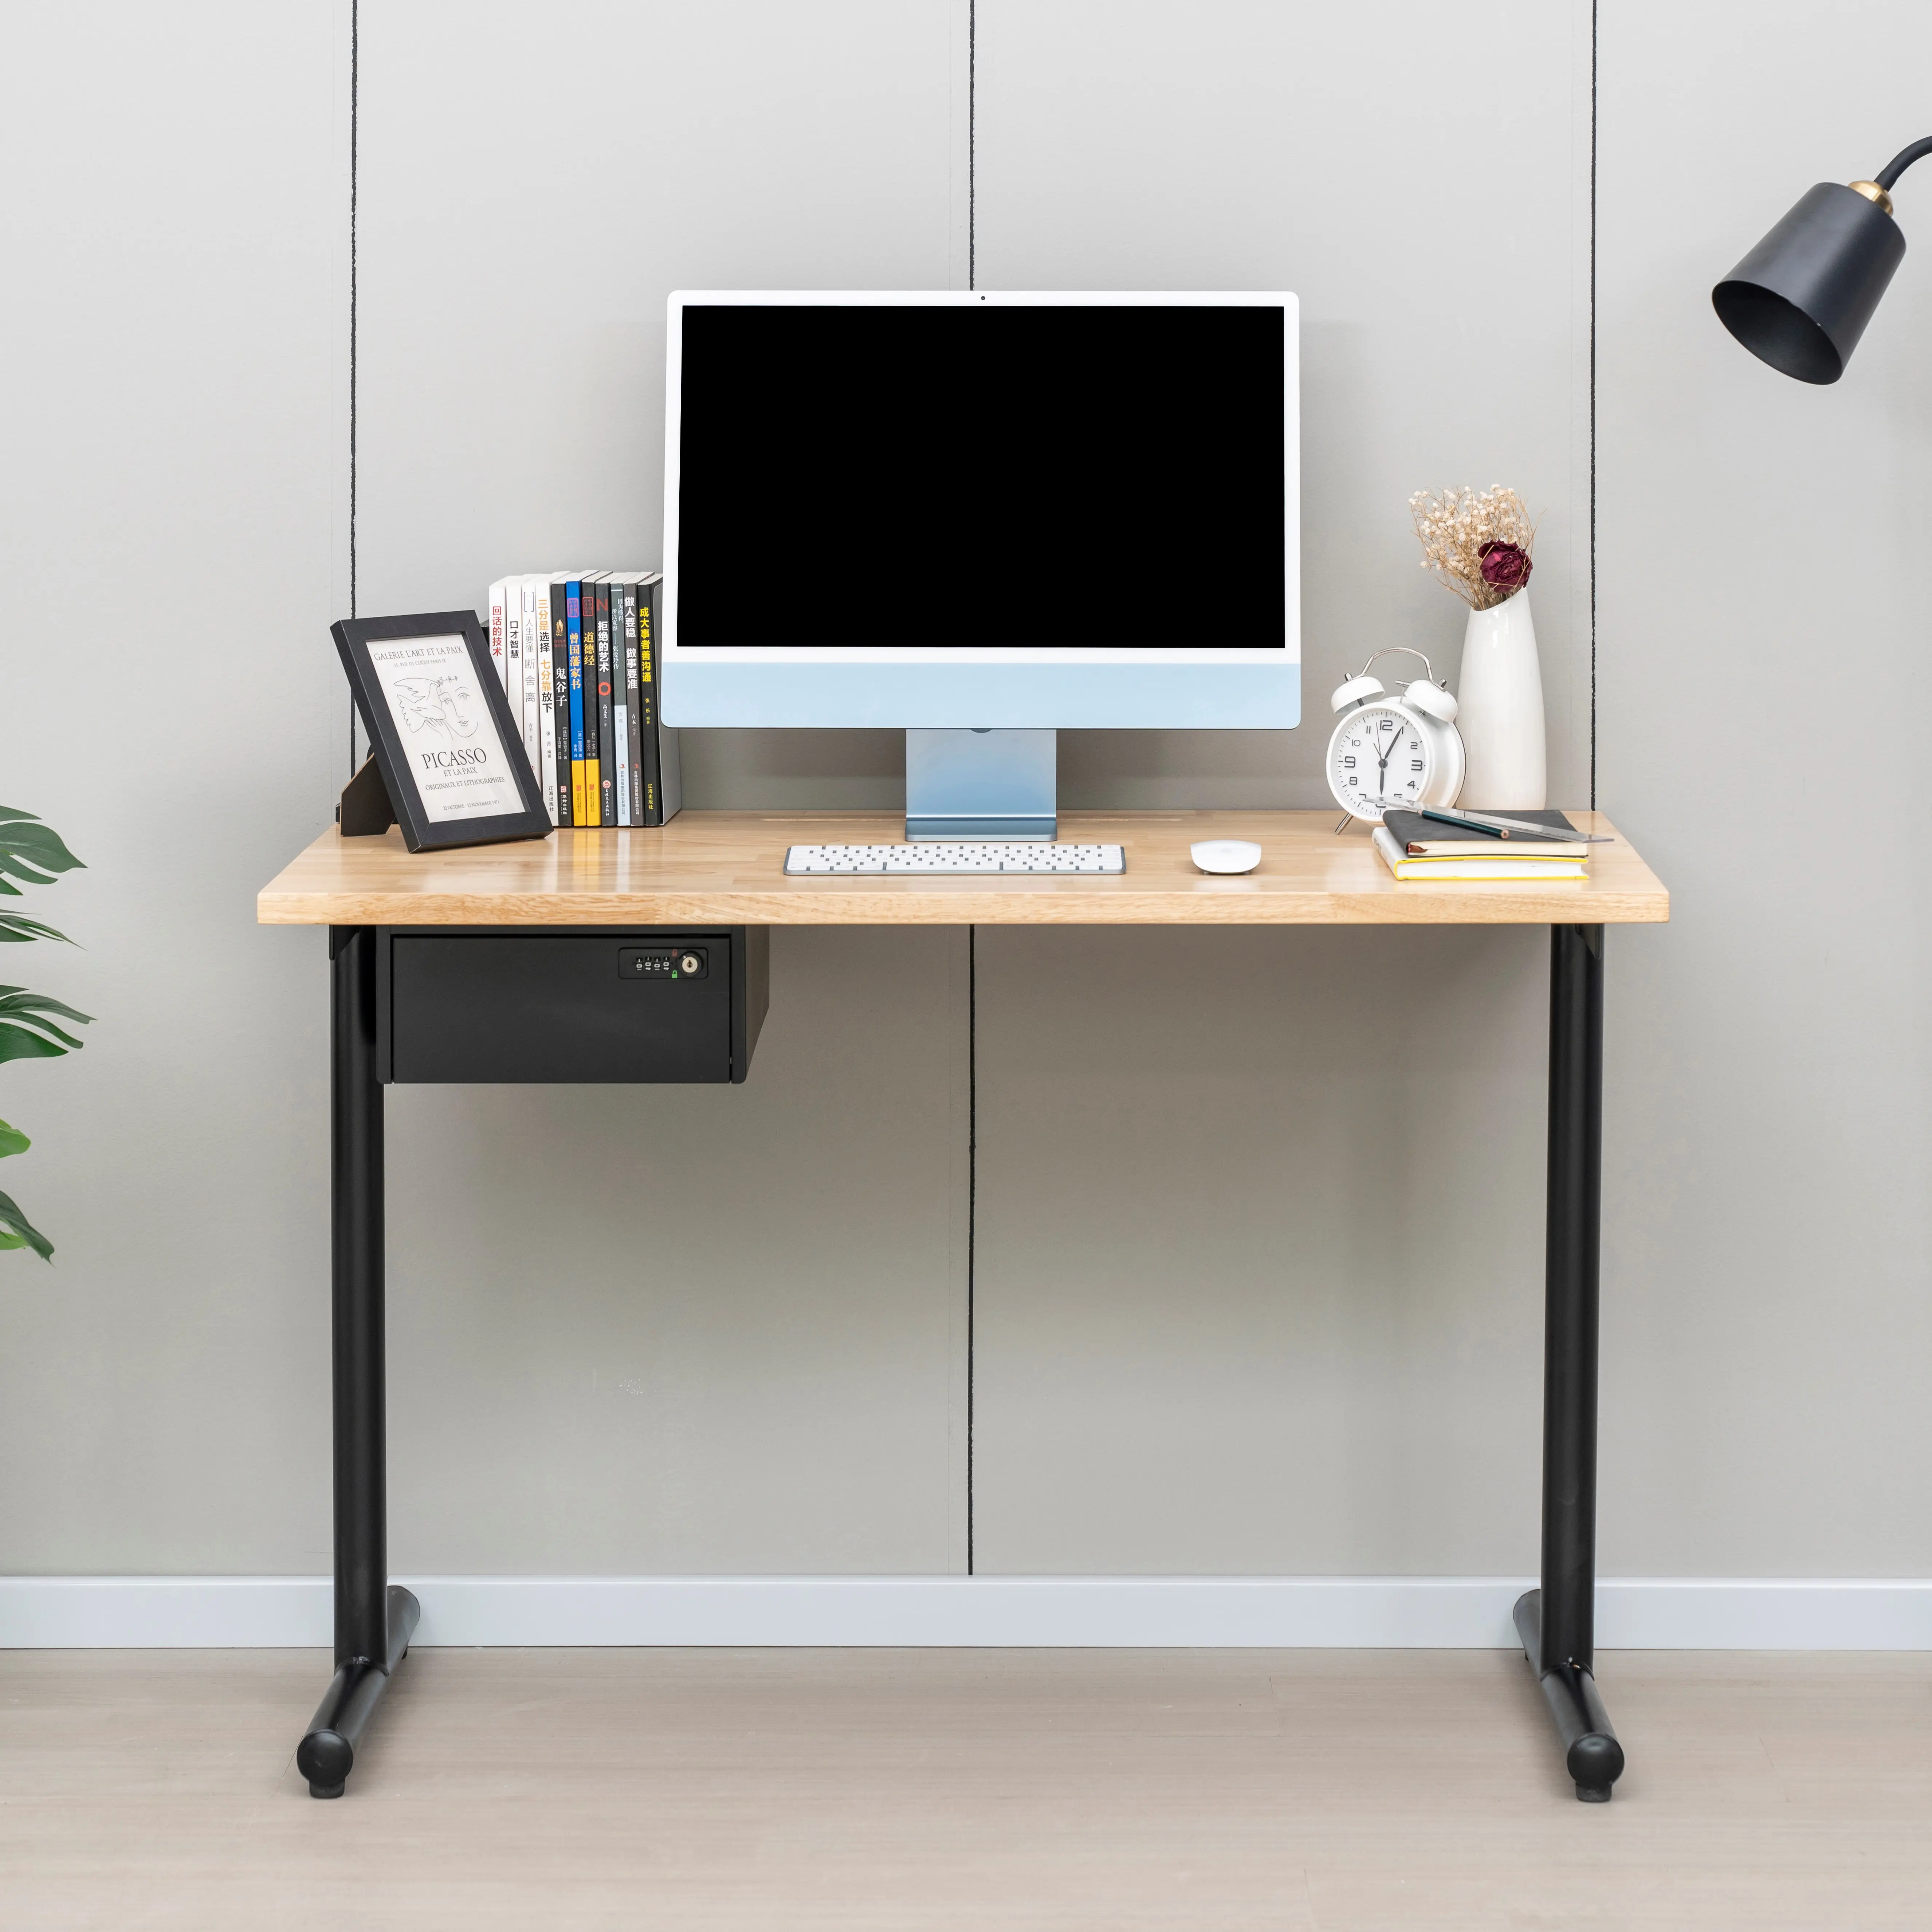 Mesa de ordenador imágenes/Oficina de Diseño mesa/muebles de oficina China